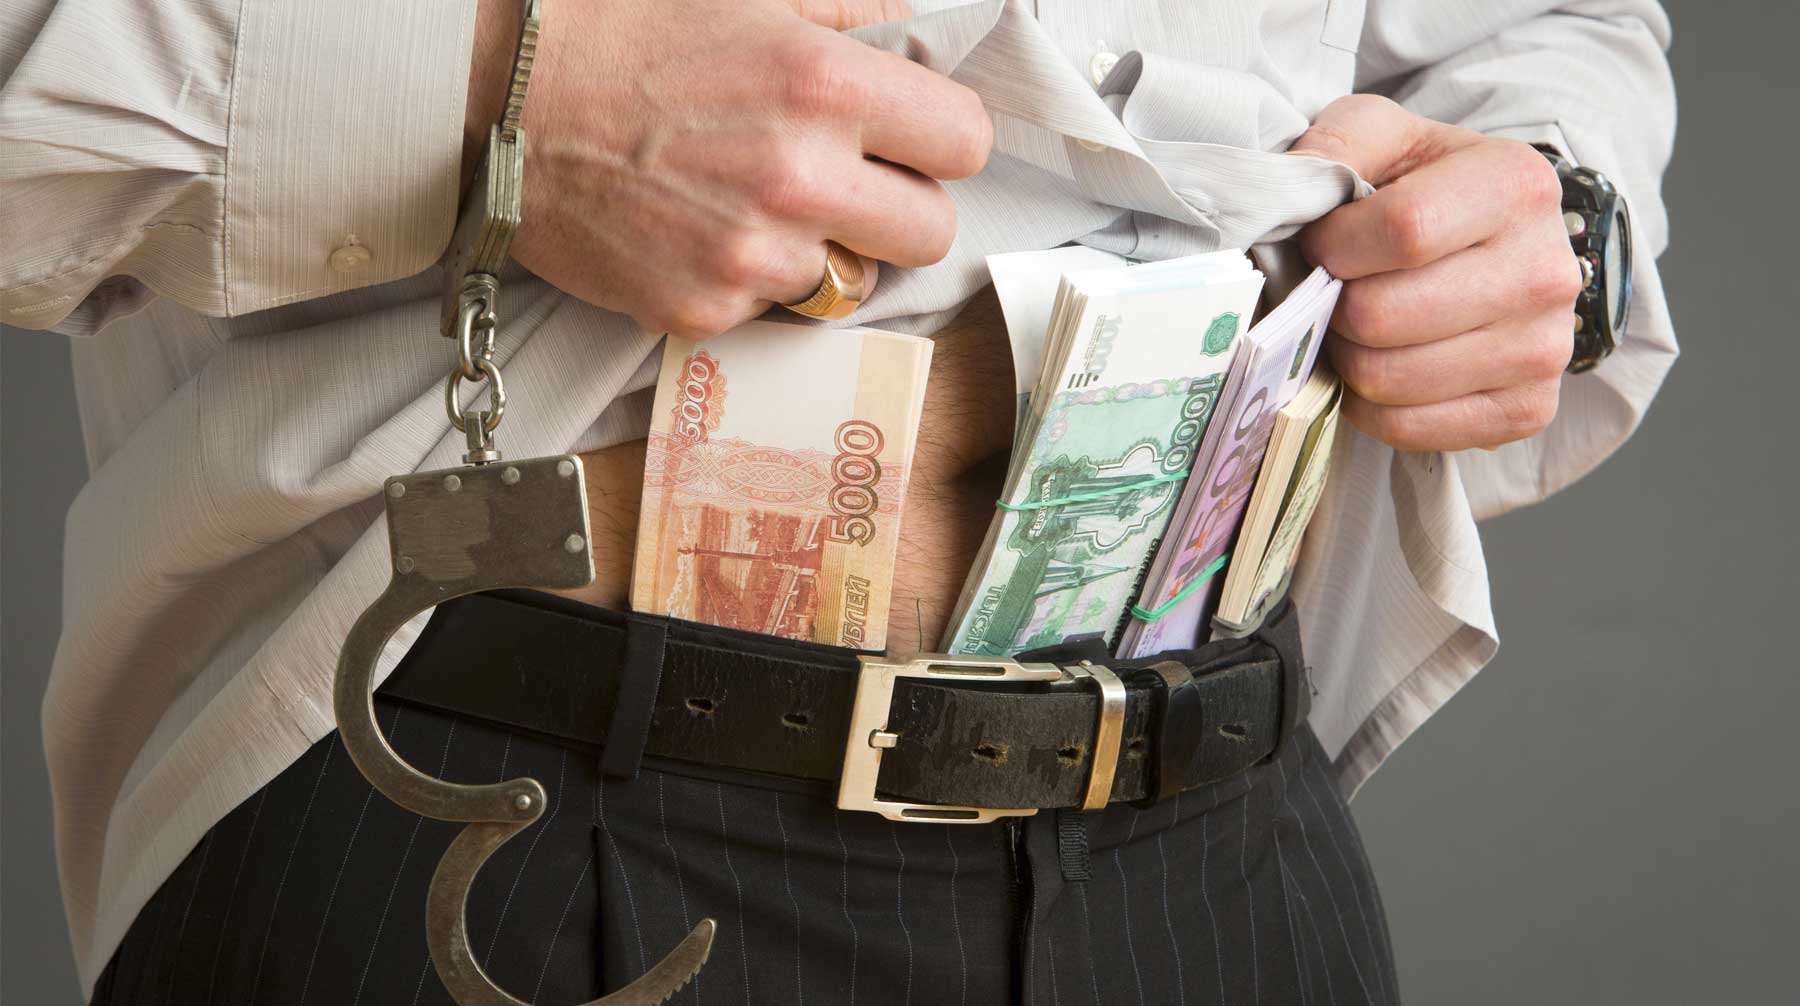 В коррупции заподозрили одного из руководителей СКР, его подчиненного и адвоката из Крыма Фото: © GLOBAL LOOK press / Nikolay Gyngazov